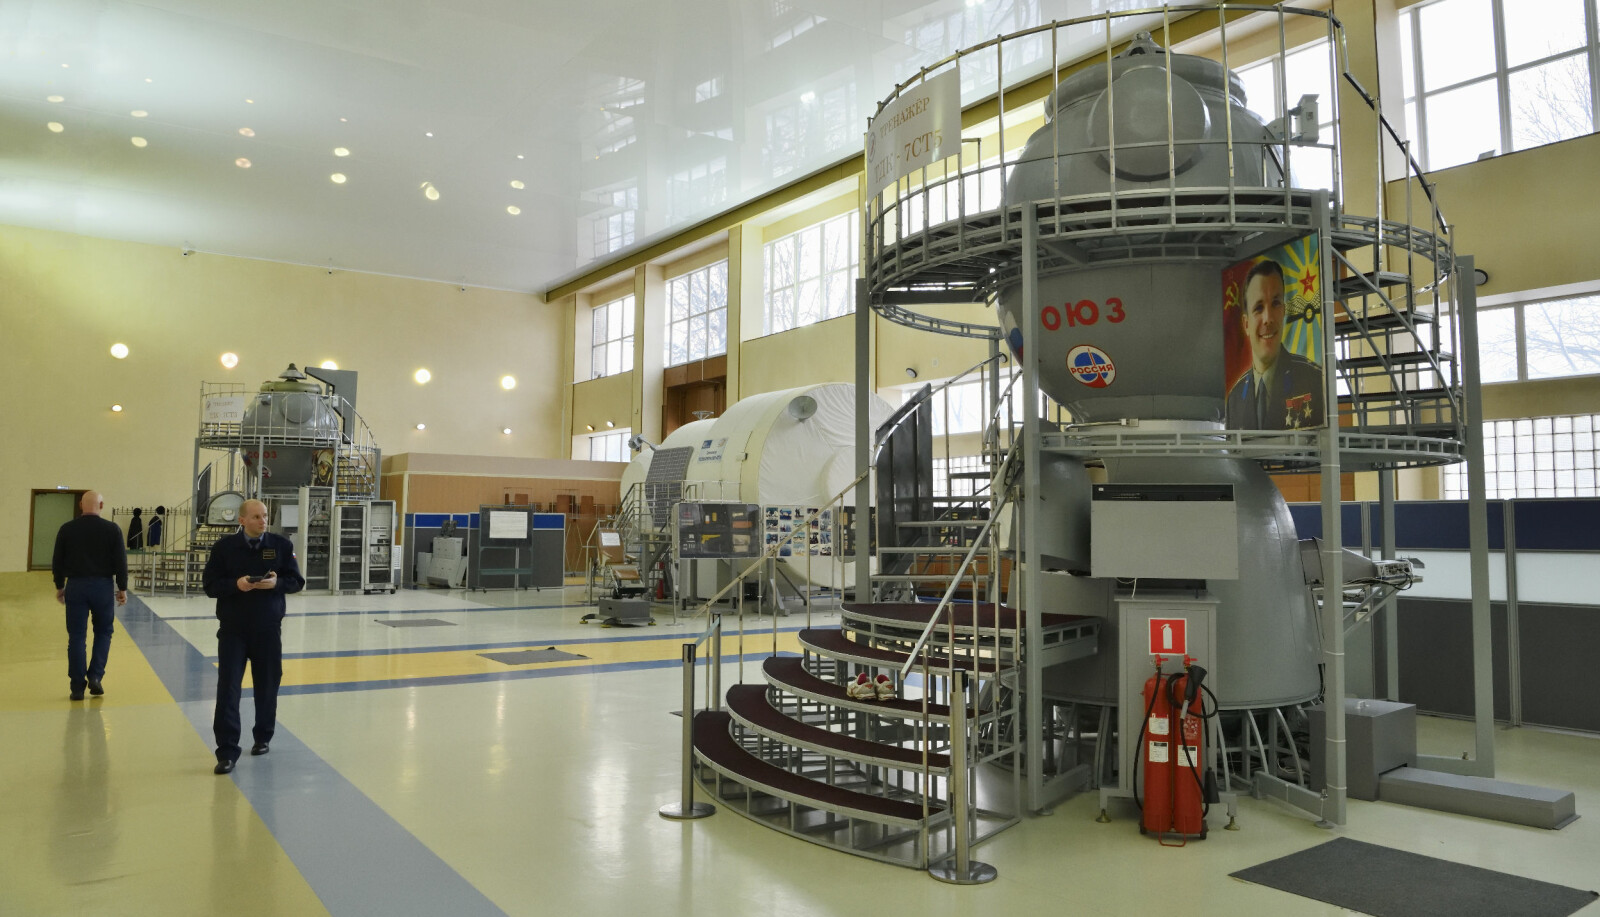 <b>UTSMYKKET:</b> I hallen der Sojus-simulatoren er satt opp, smykker portretter av Juri Gagarin installasjonene. Her må all verdens romfarere innom på sin vei ut i verdensrommet.